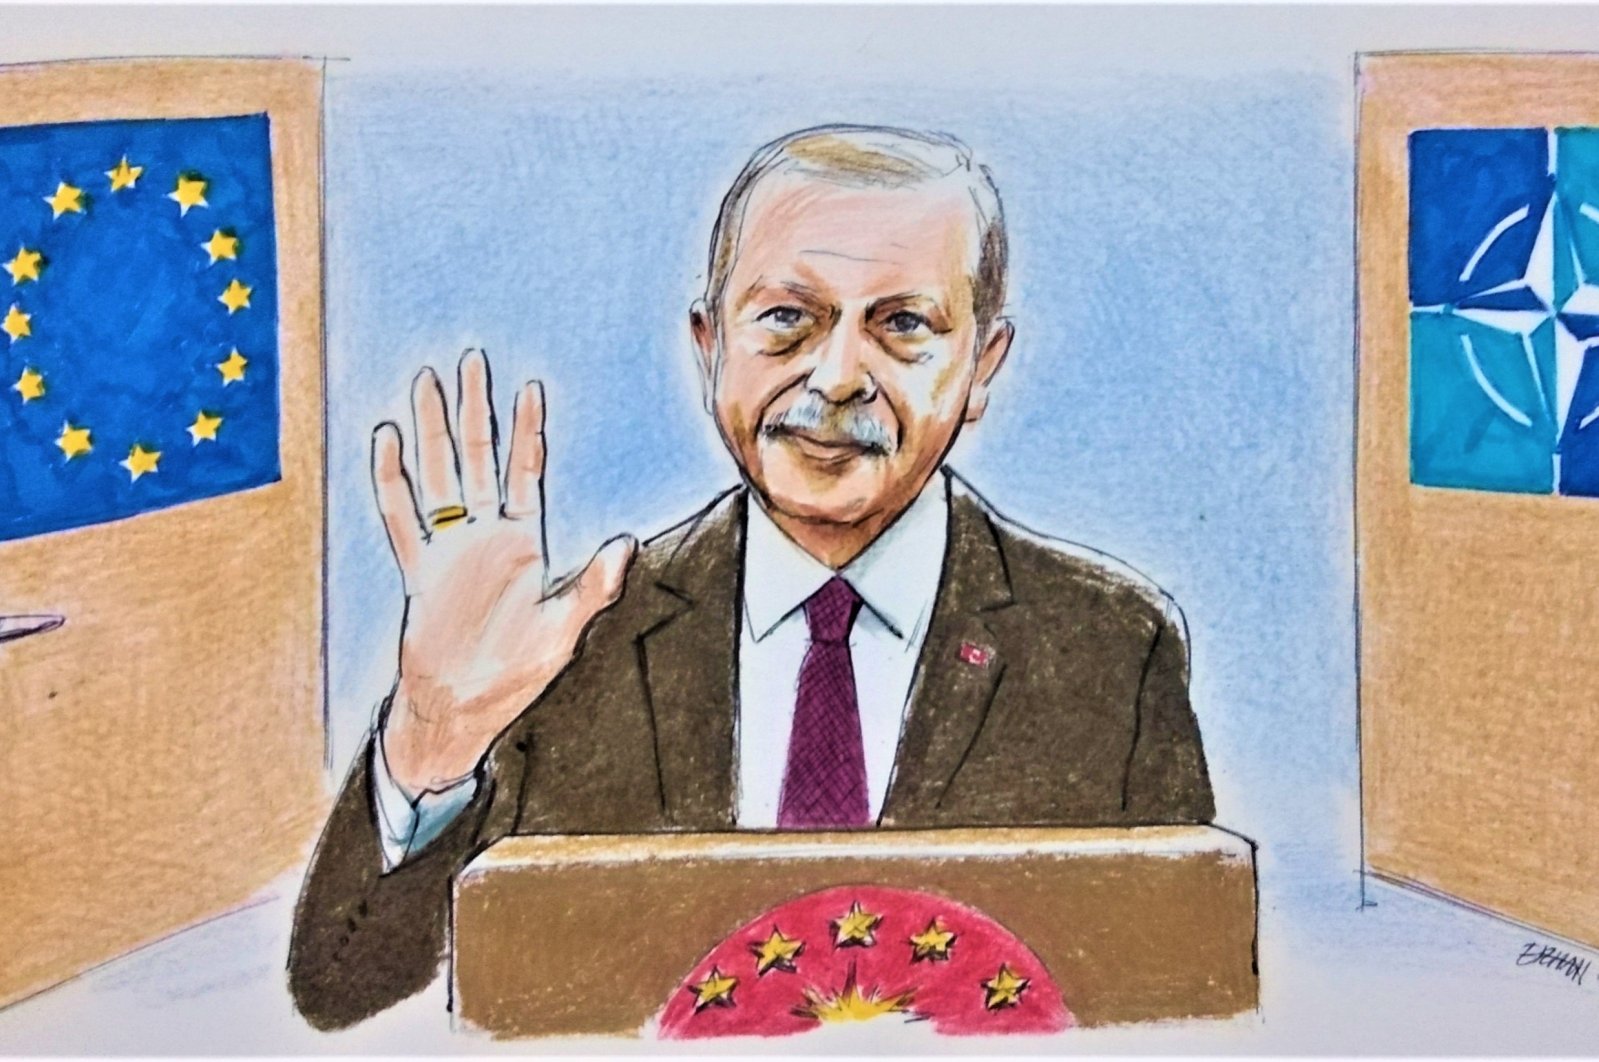 Apa motif di balik pernyataan Erdogan tentang keanggotaan UE?